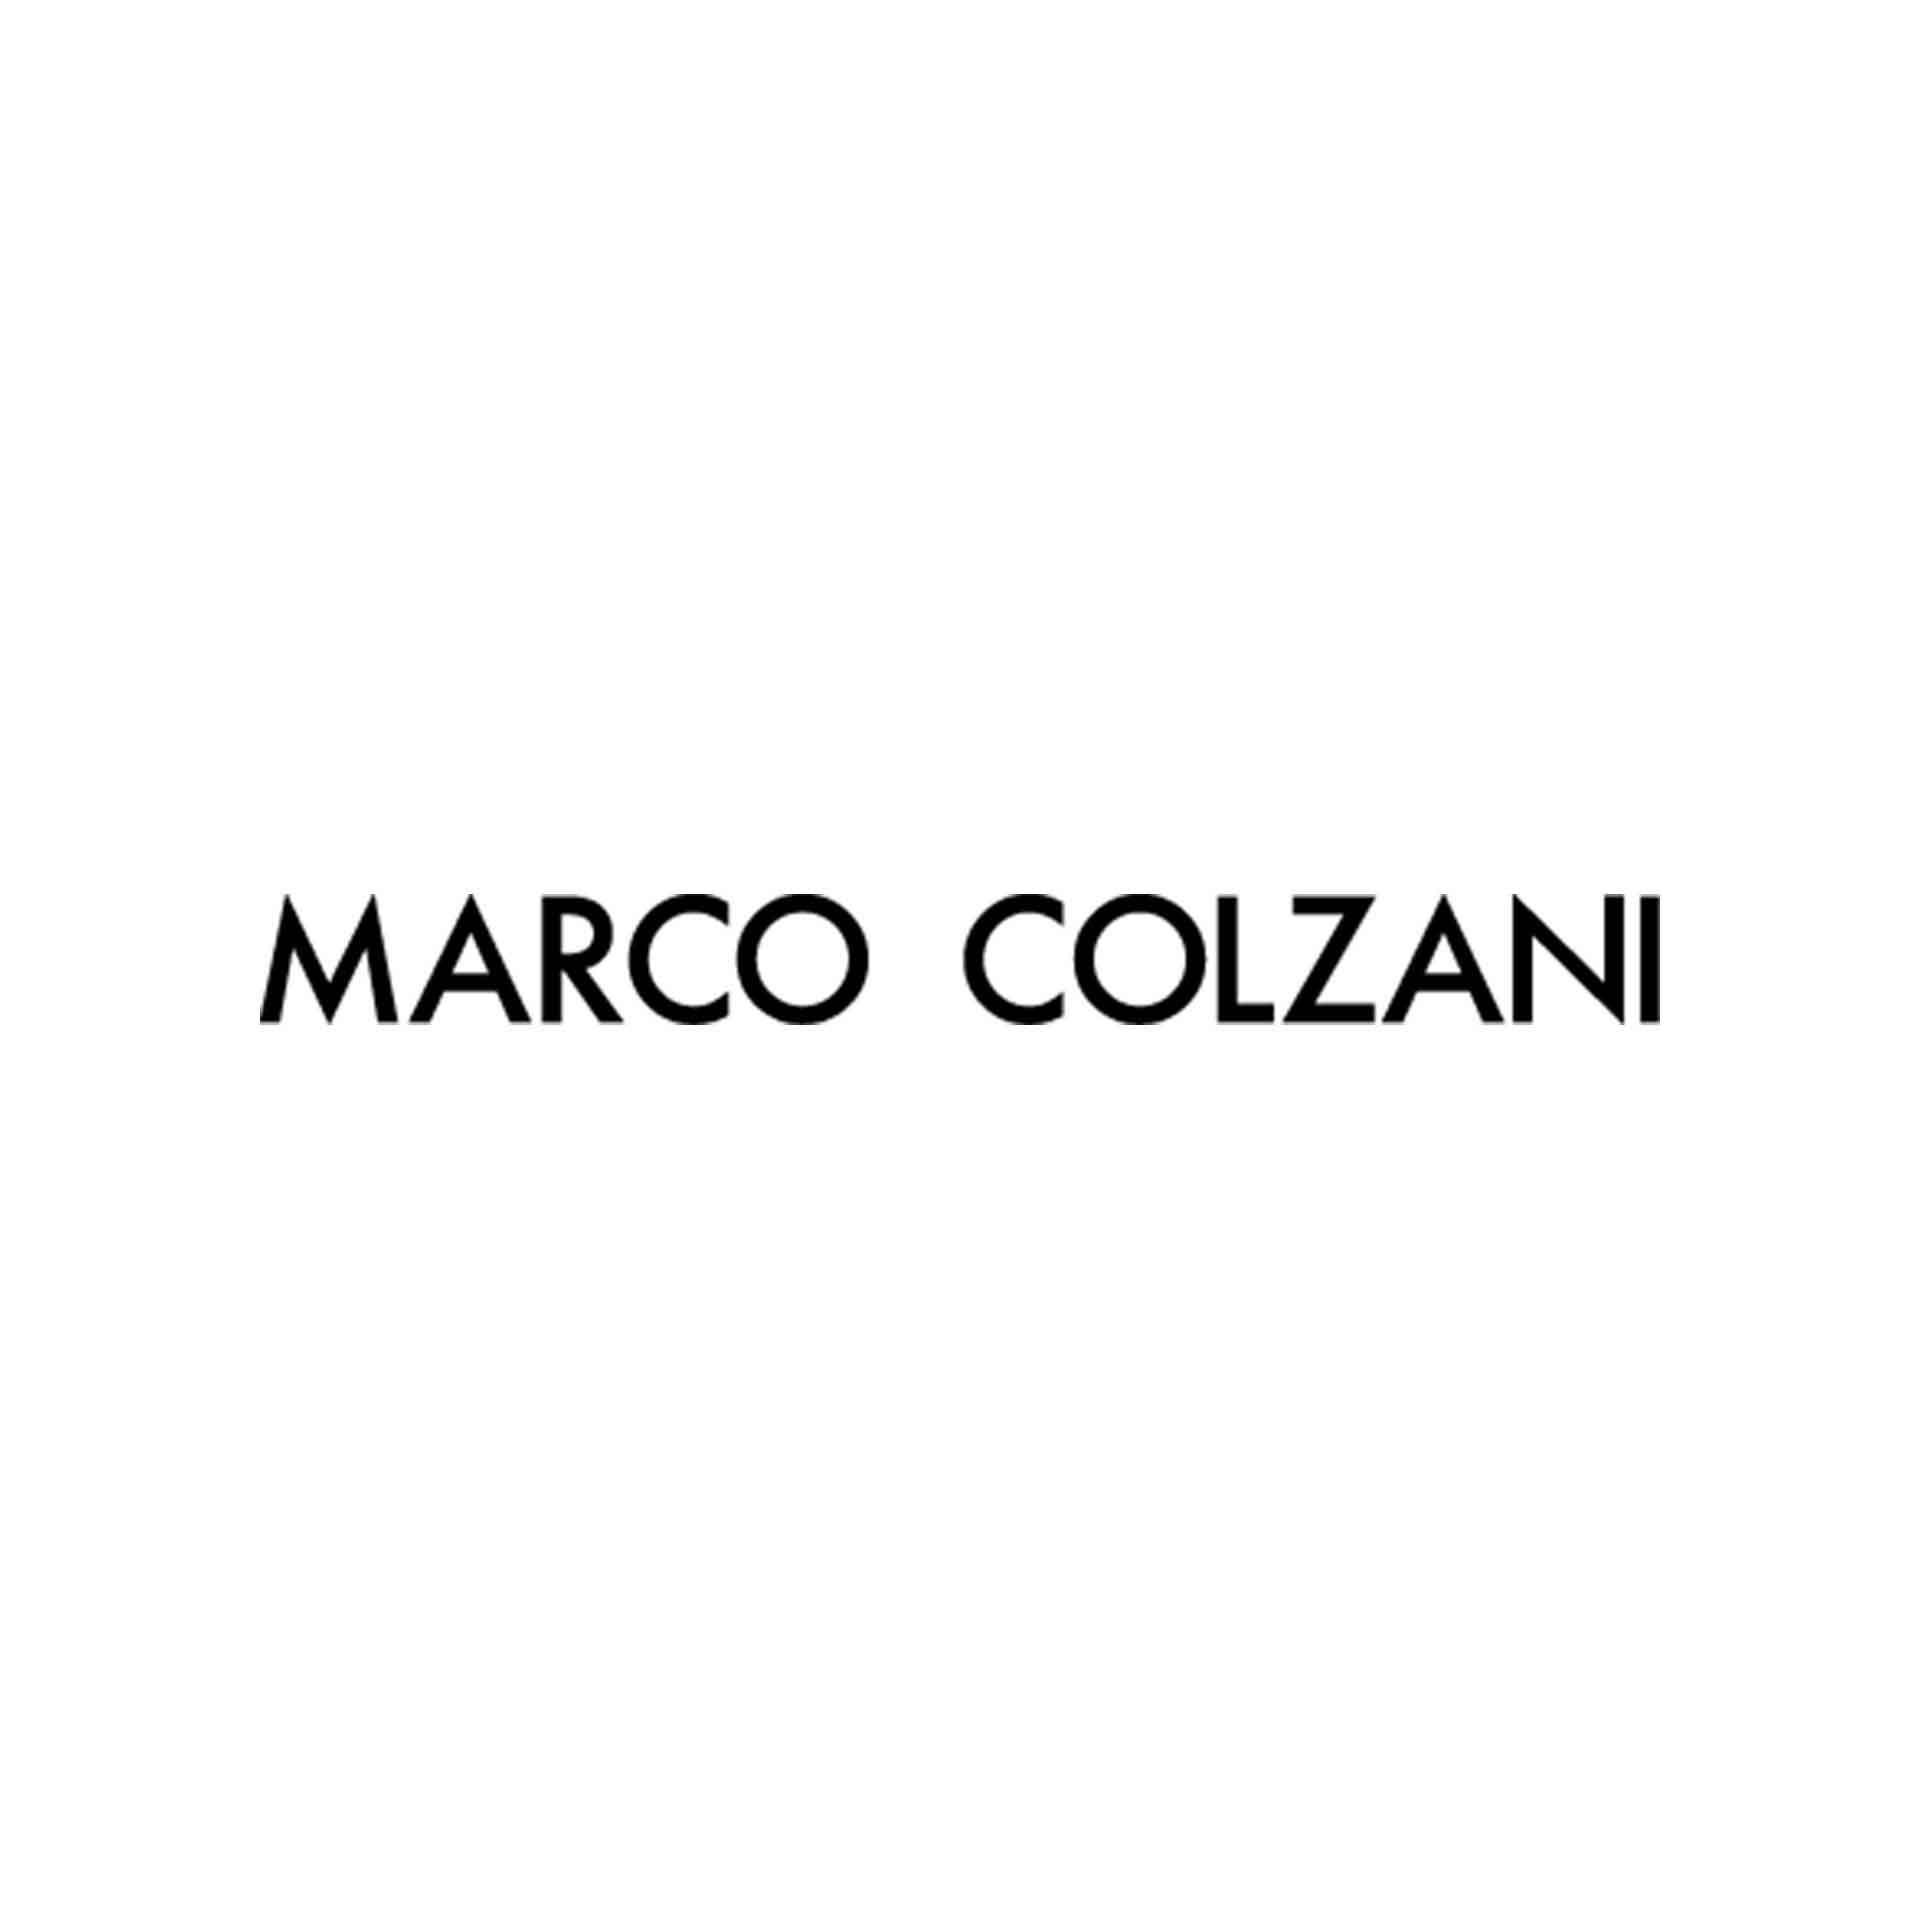 Colzani Marco